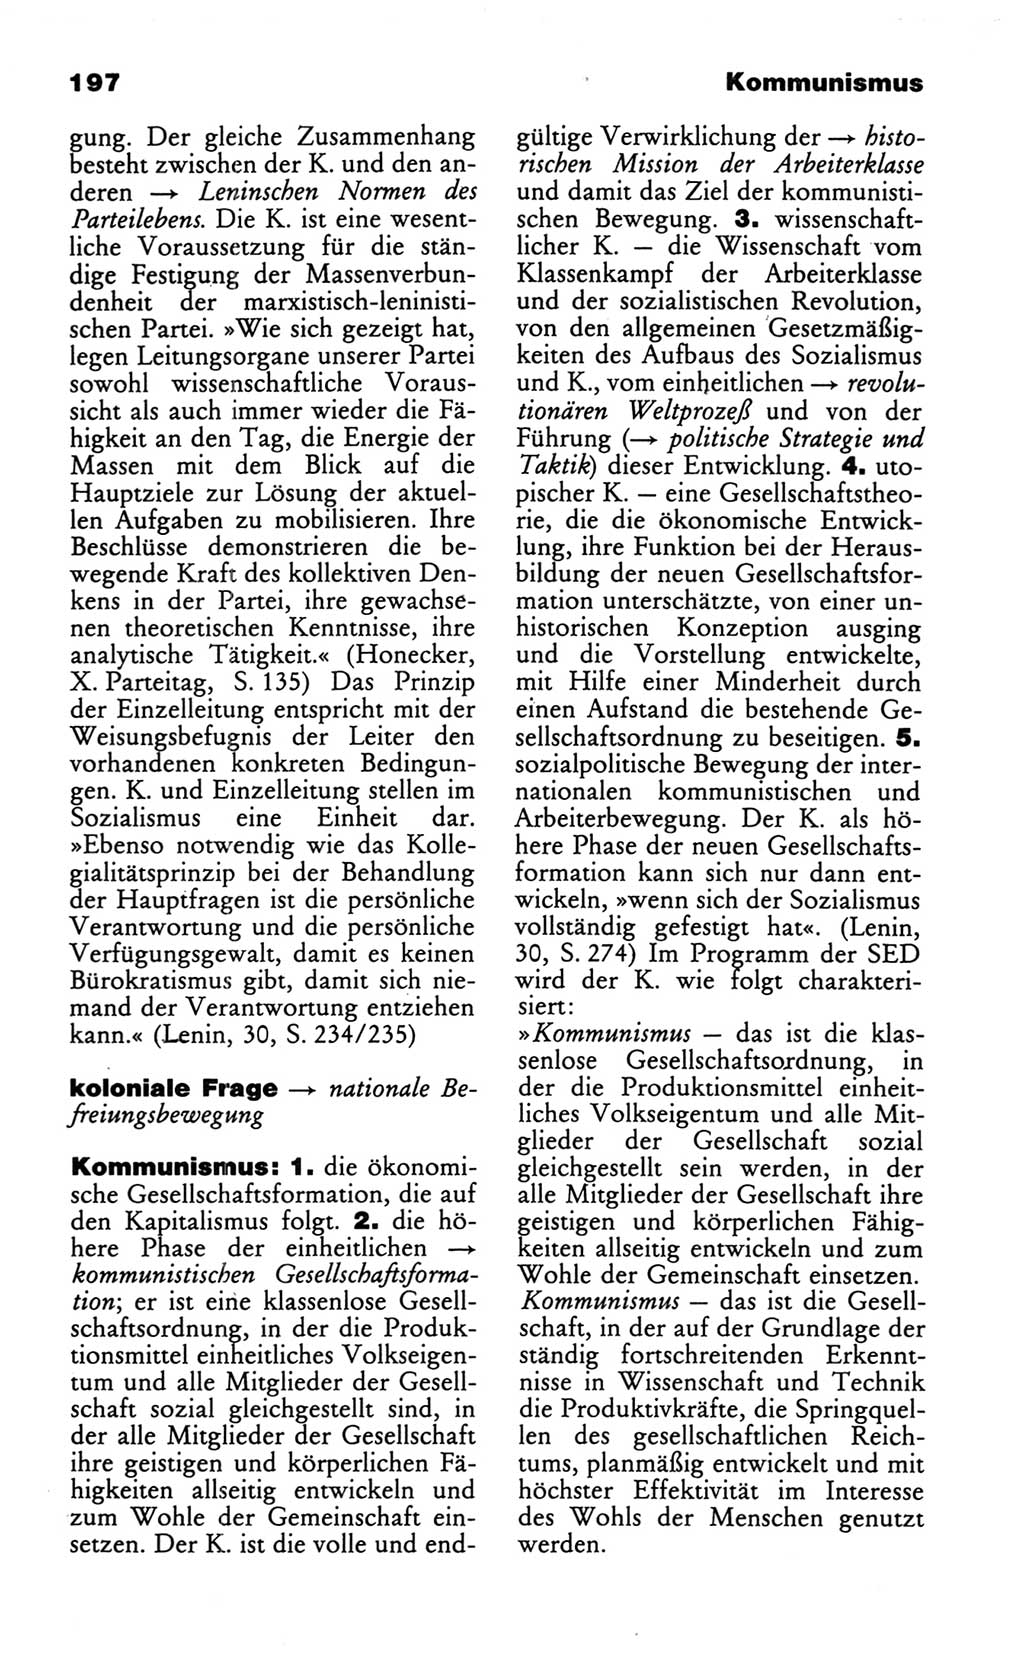 Wörterbuch des wissenschaftlichen Kommunismus [Deutsche Demokratische Republik (DDR)] 1986, Seite 197 (Wb. wiss. Komm. DDR 1986, S. 197)